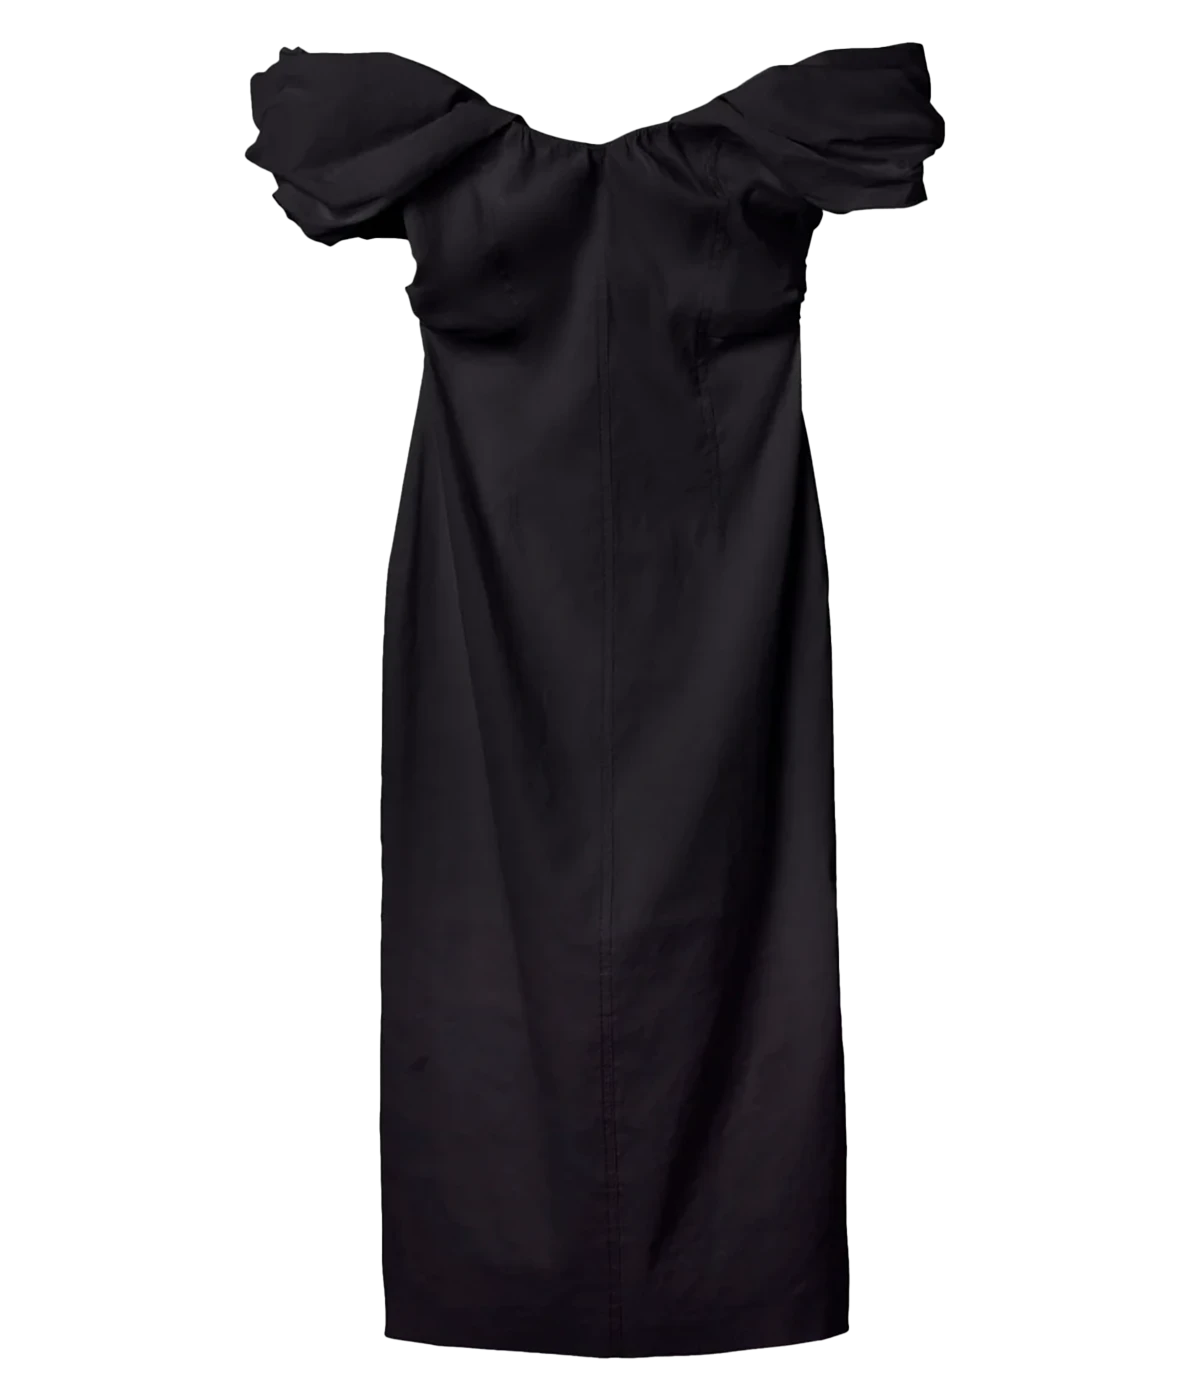 Nora Dress in Black